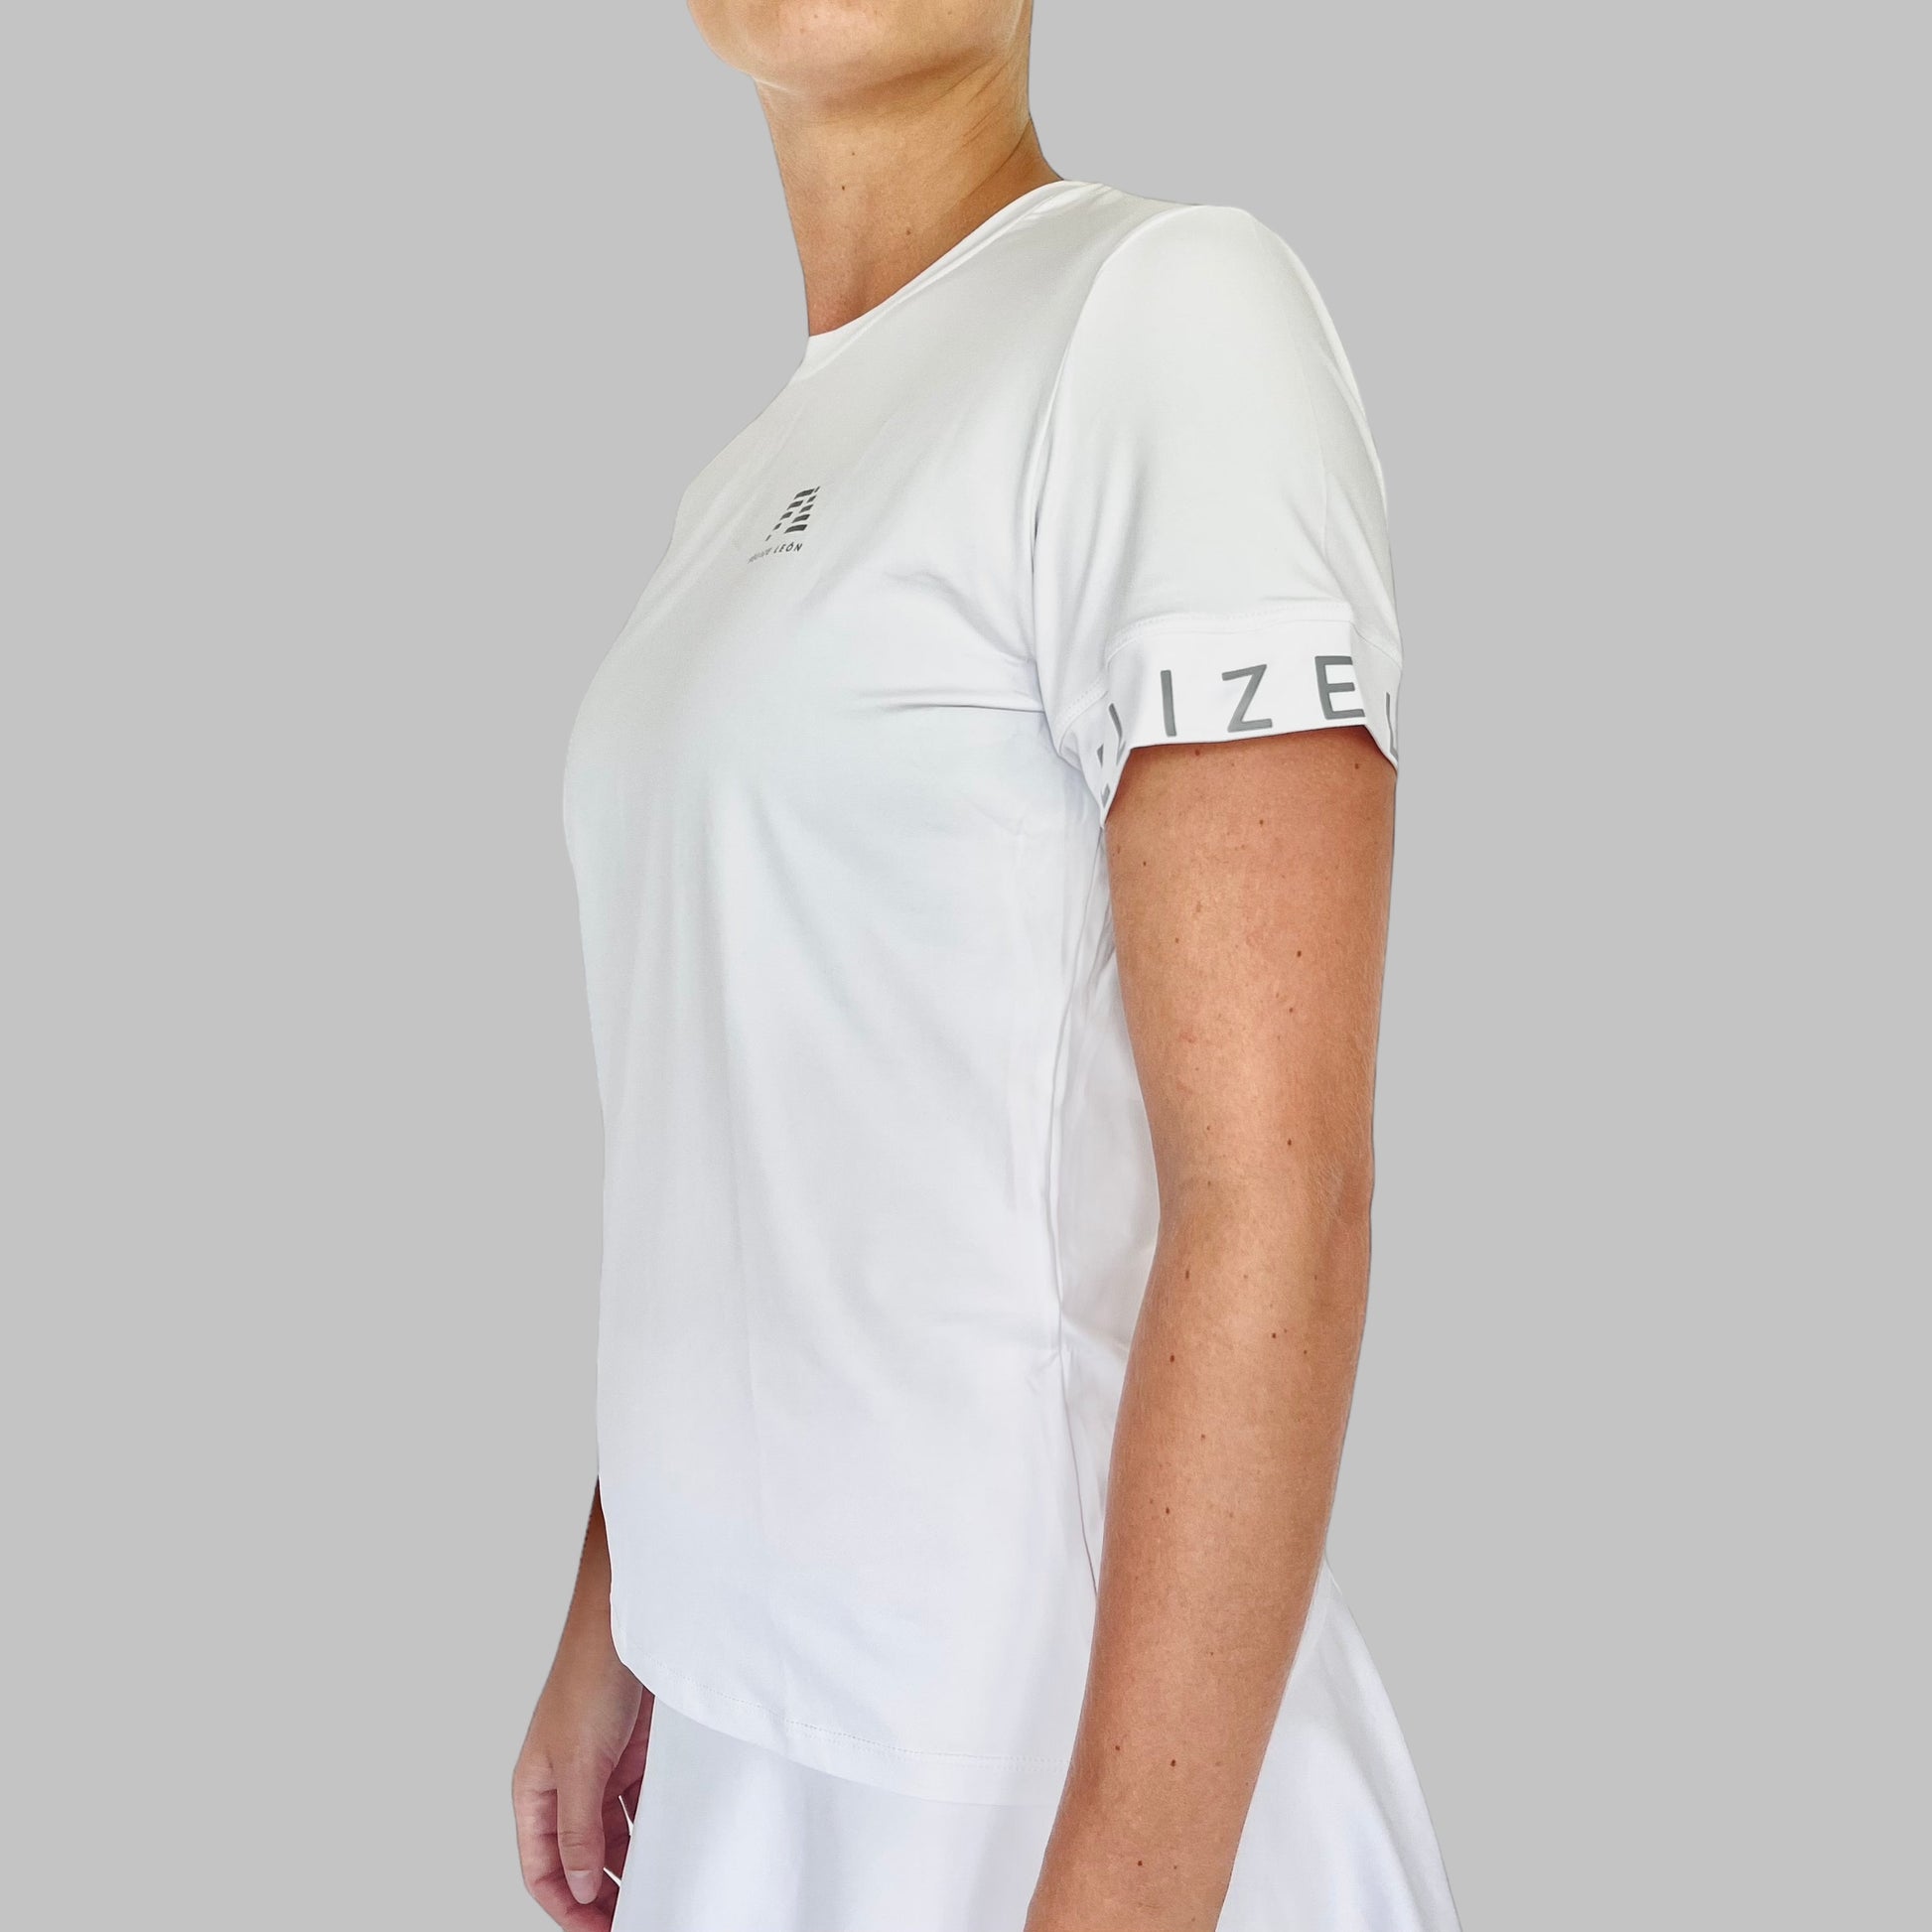 Alina Performance T-shirt - Detaljbild på ärmslut - Idealisk för racketidrotter